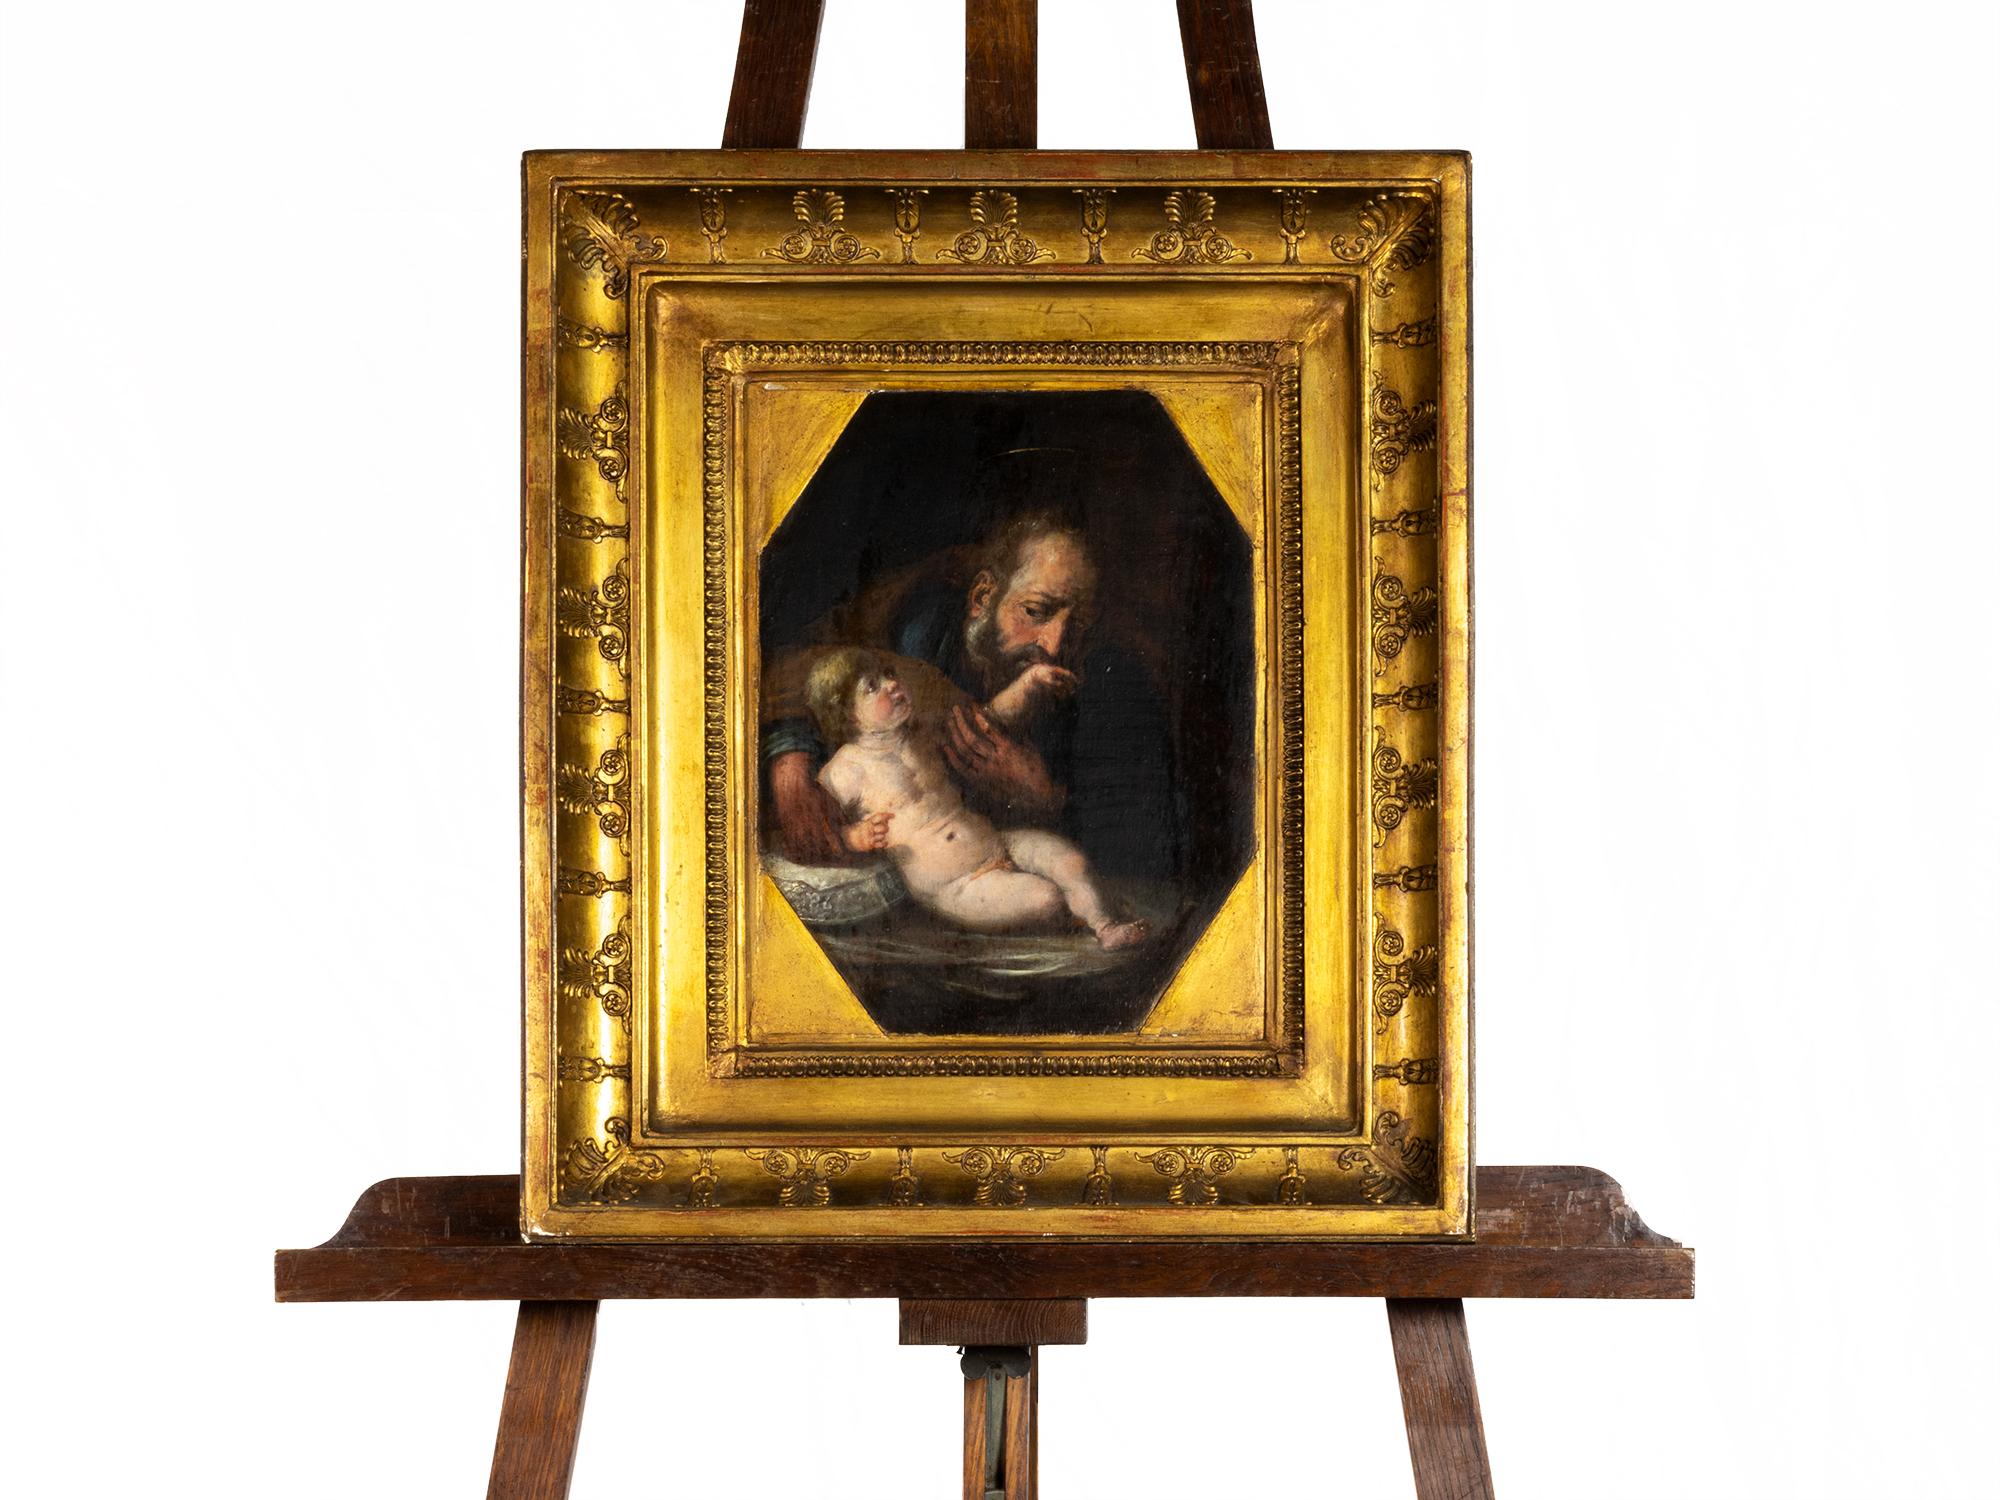 Ein Gemälde aus dem 17. Jahrhundert, das Joseph mit dem Jesuskind auf dem Schoß zeigt, ein seltenes barockes Motiv der väterlichen Liebe.

Öl auf Holz

Rahmen: 47x54 cm    
Ohne Rahmen: 27x34 cm